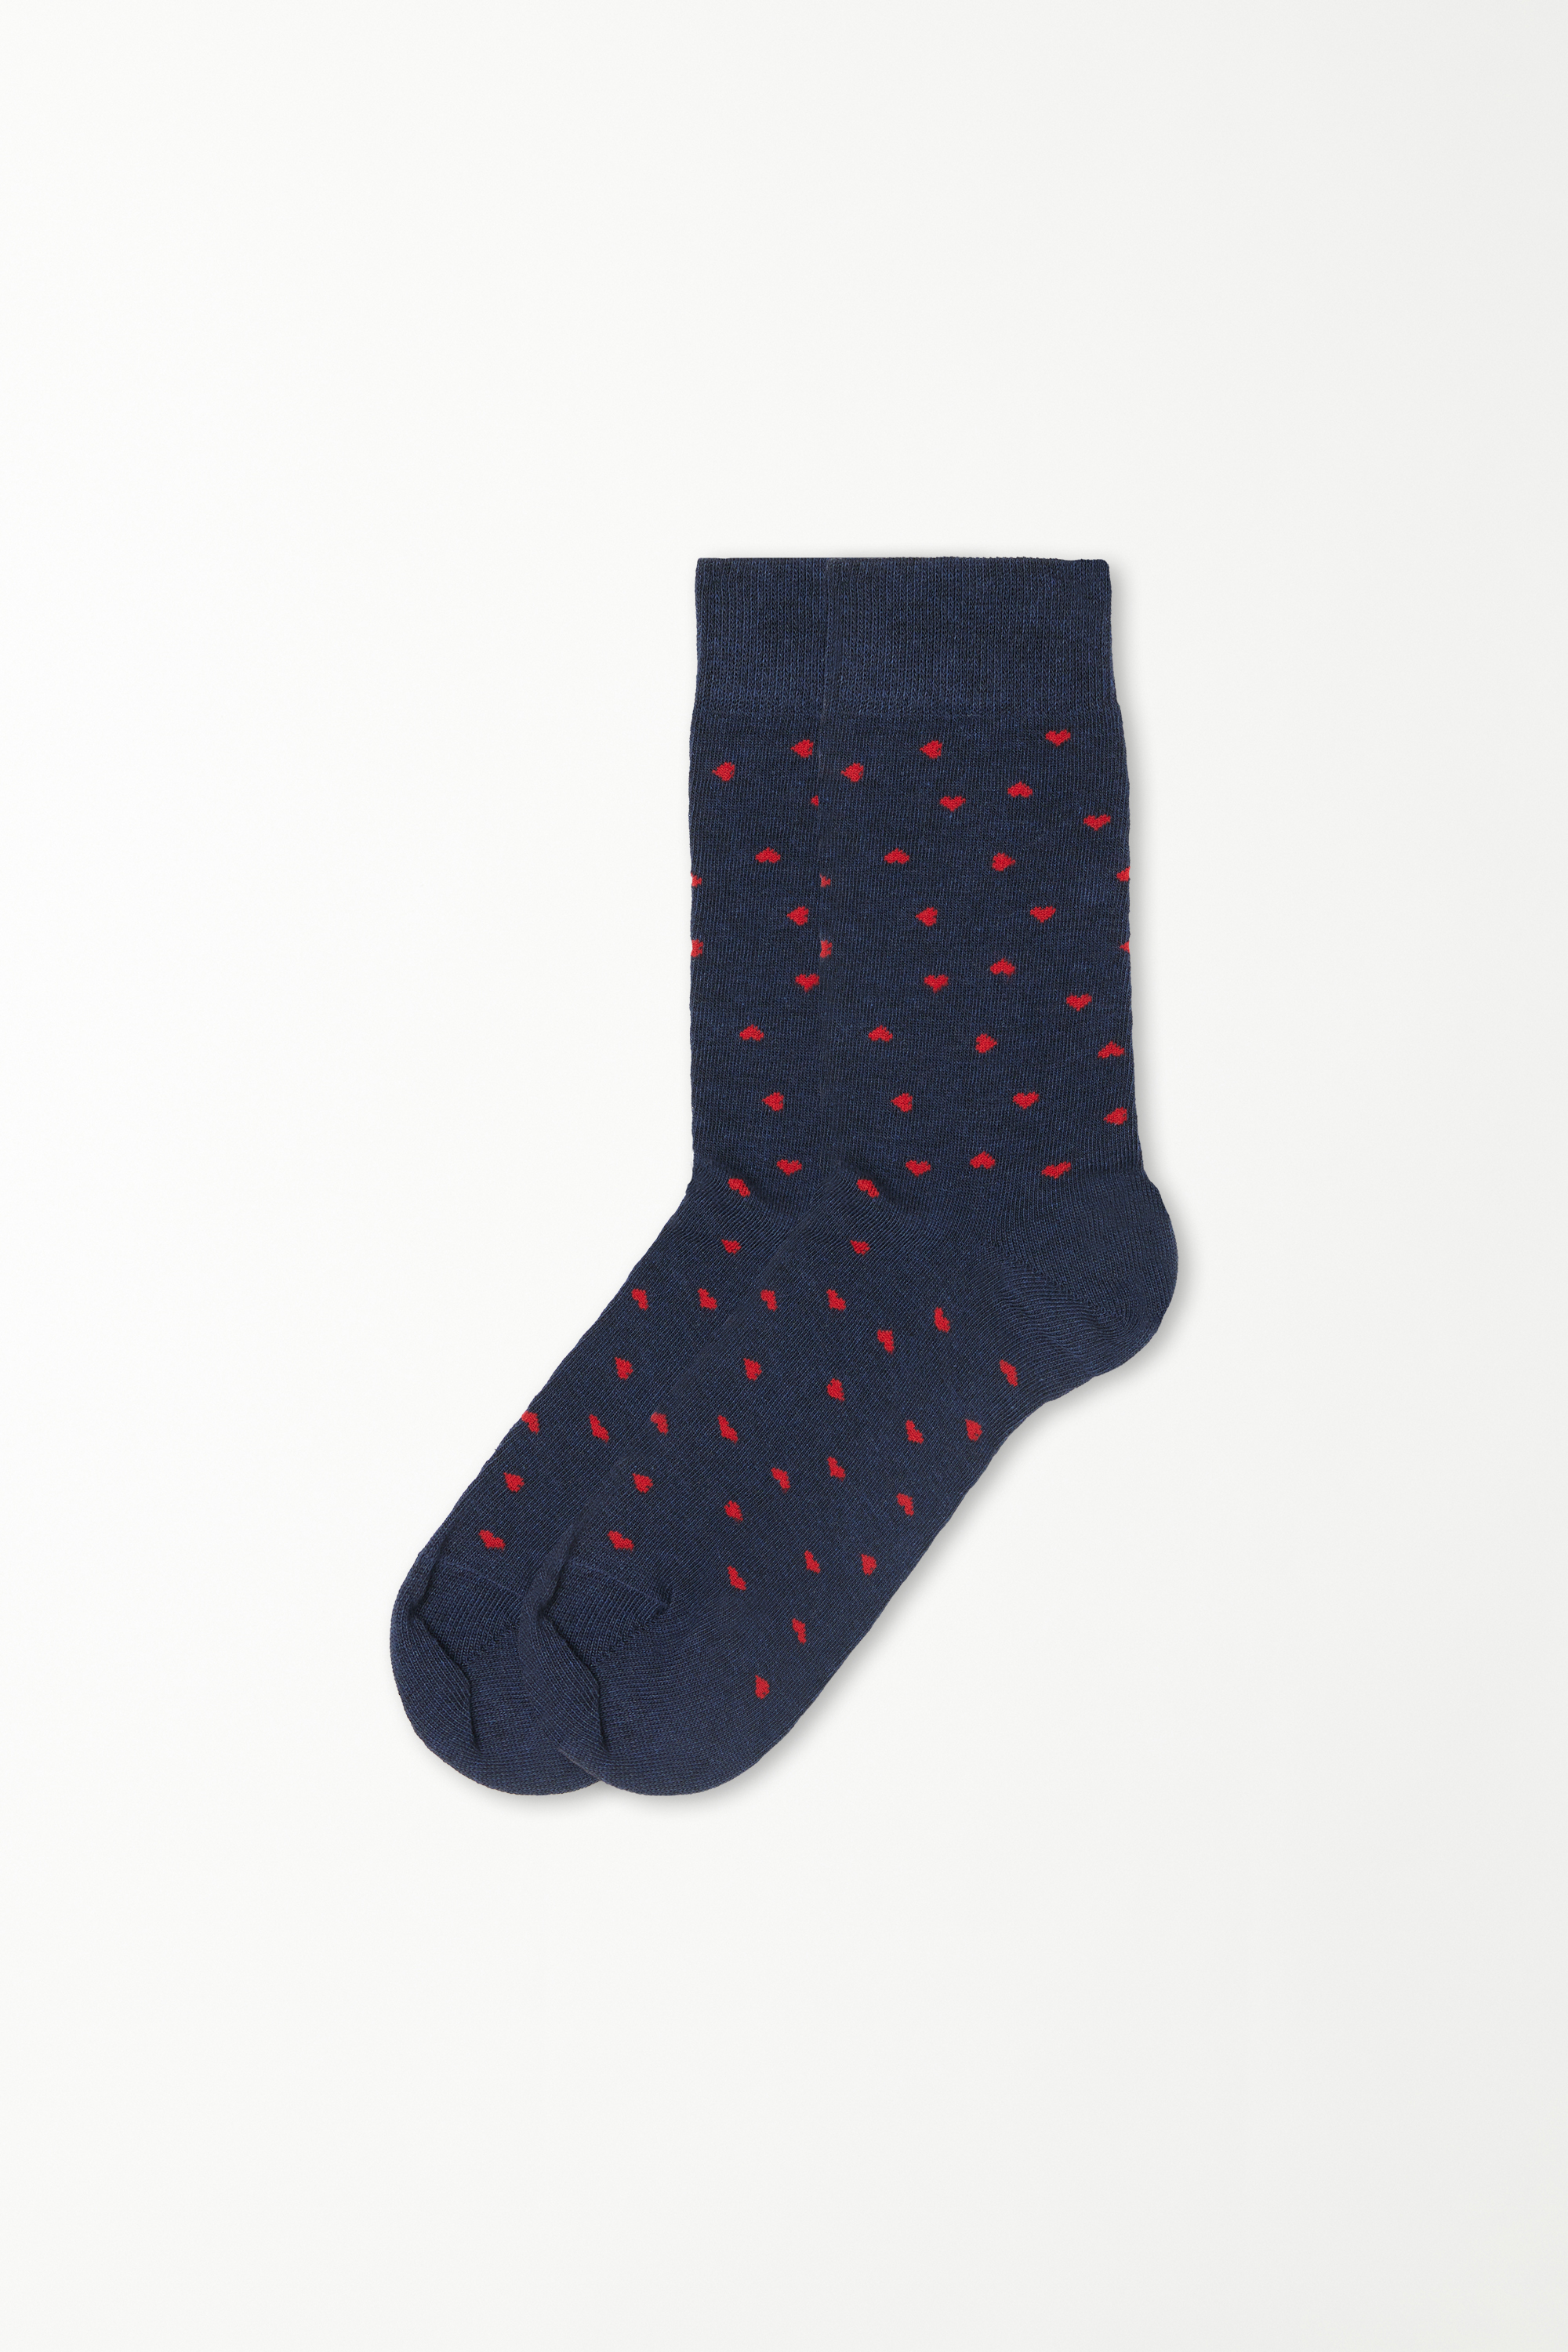 Halbkurze Herren-Socken aus gemusterter Baumwolle